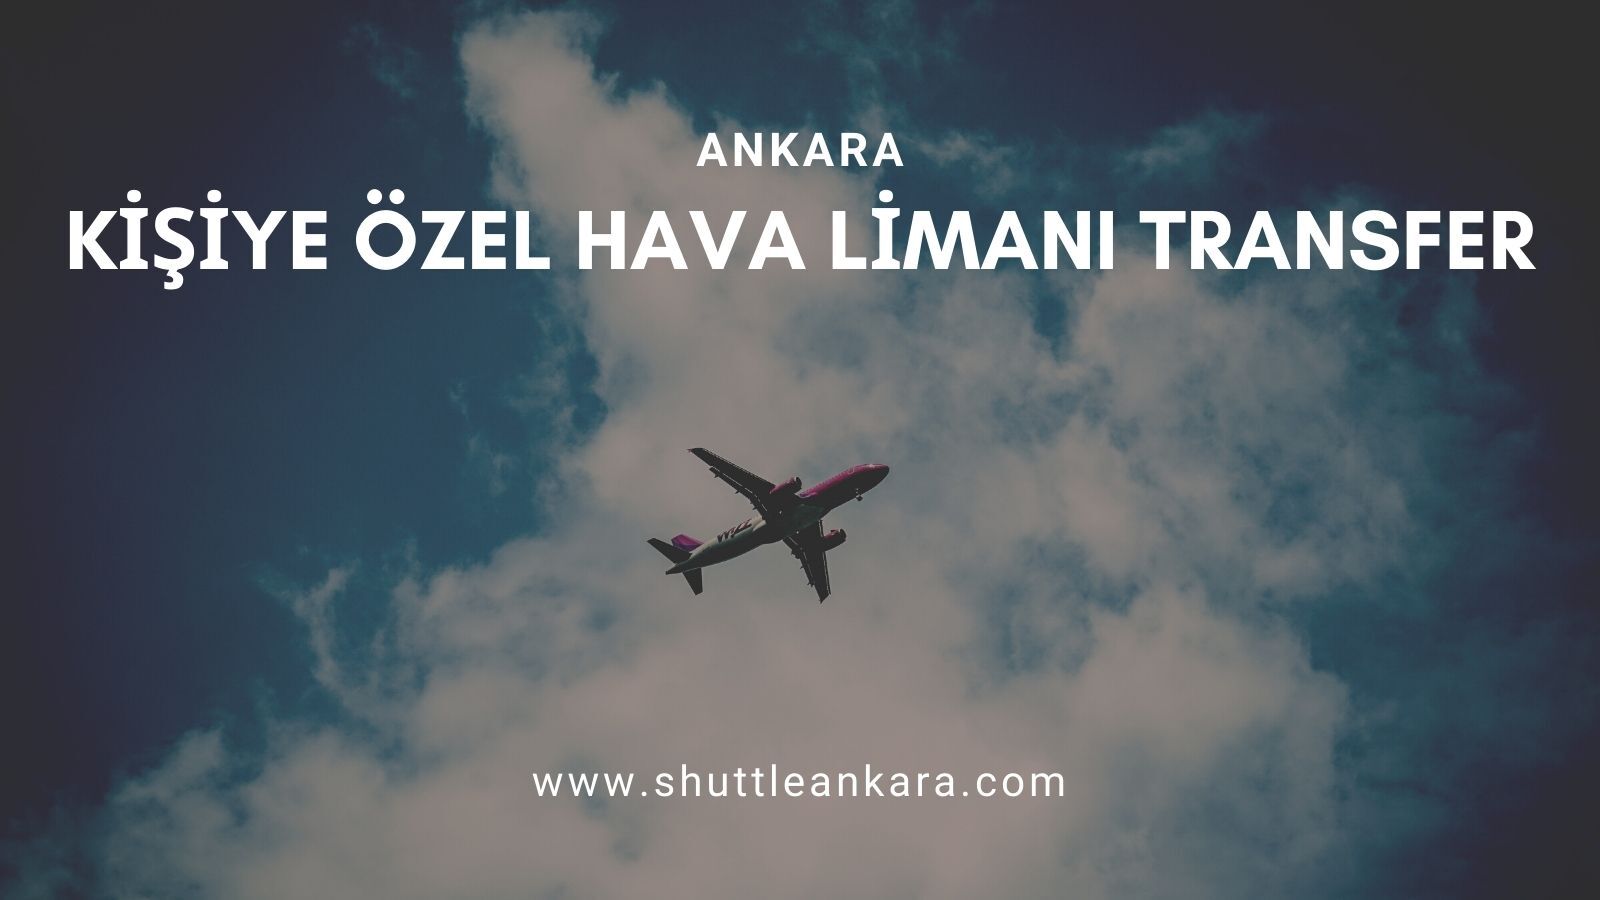 Ankara Kişiye Özel Hava Limanı Transfer 